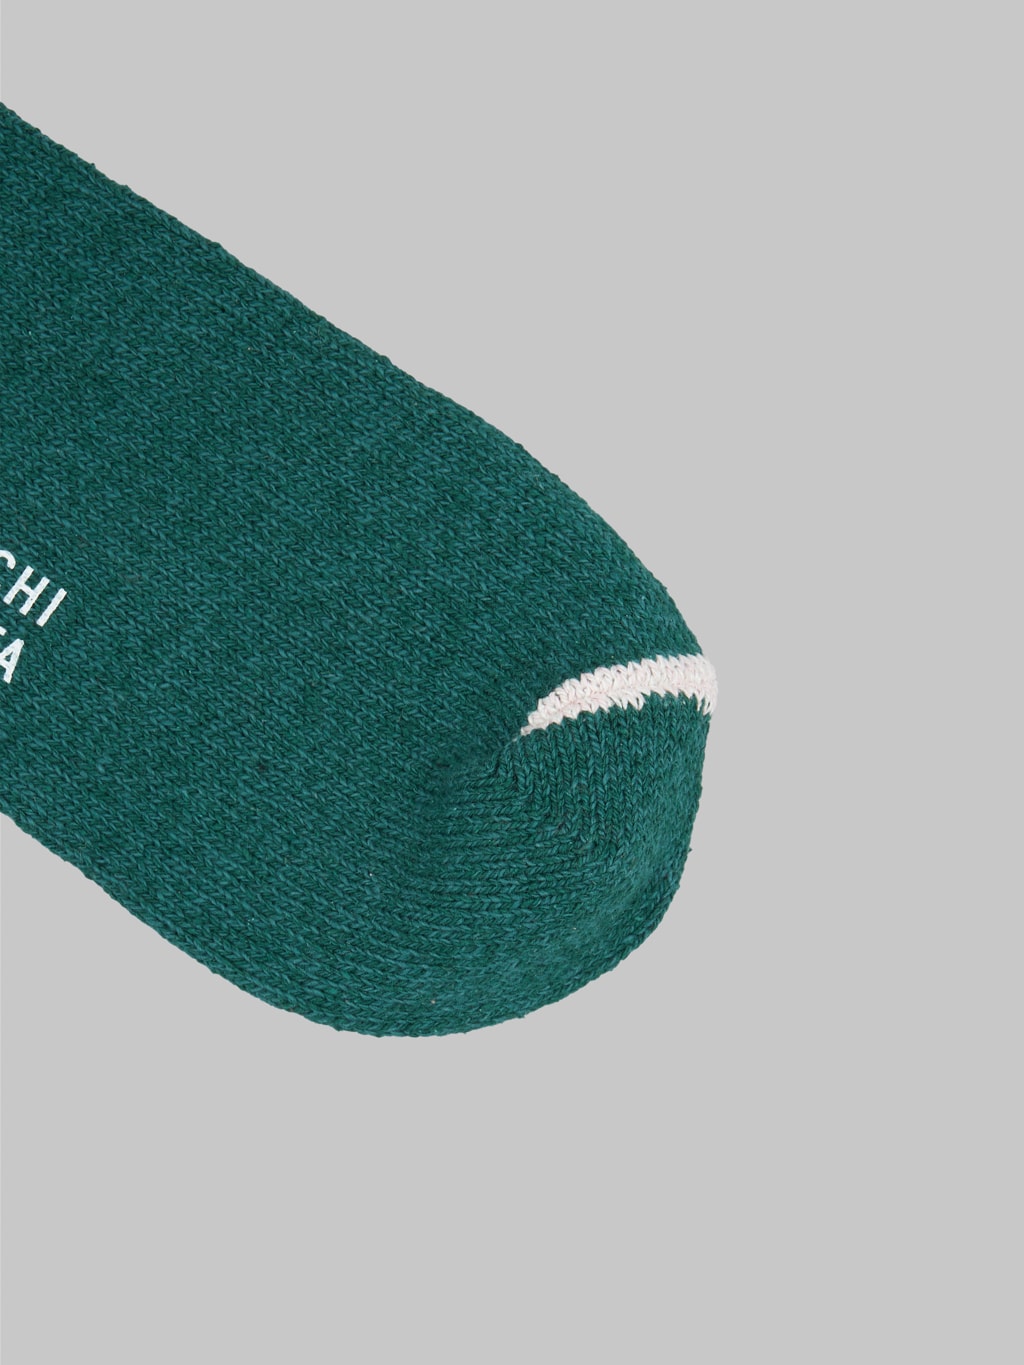 nishiguchi kutsushita silk cotton socks amazon green toe